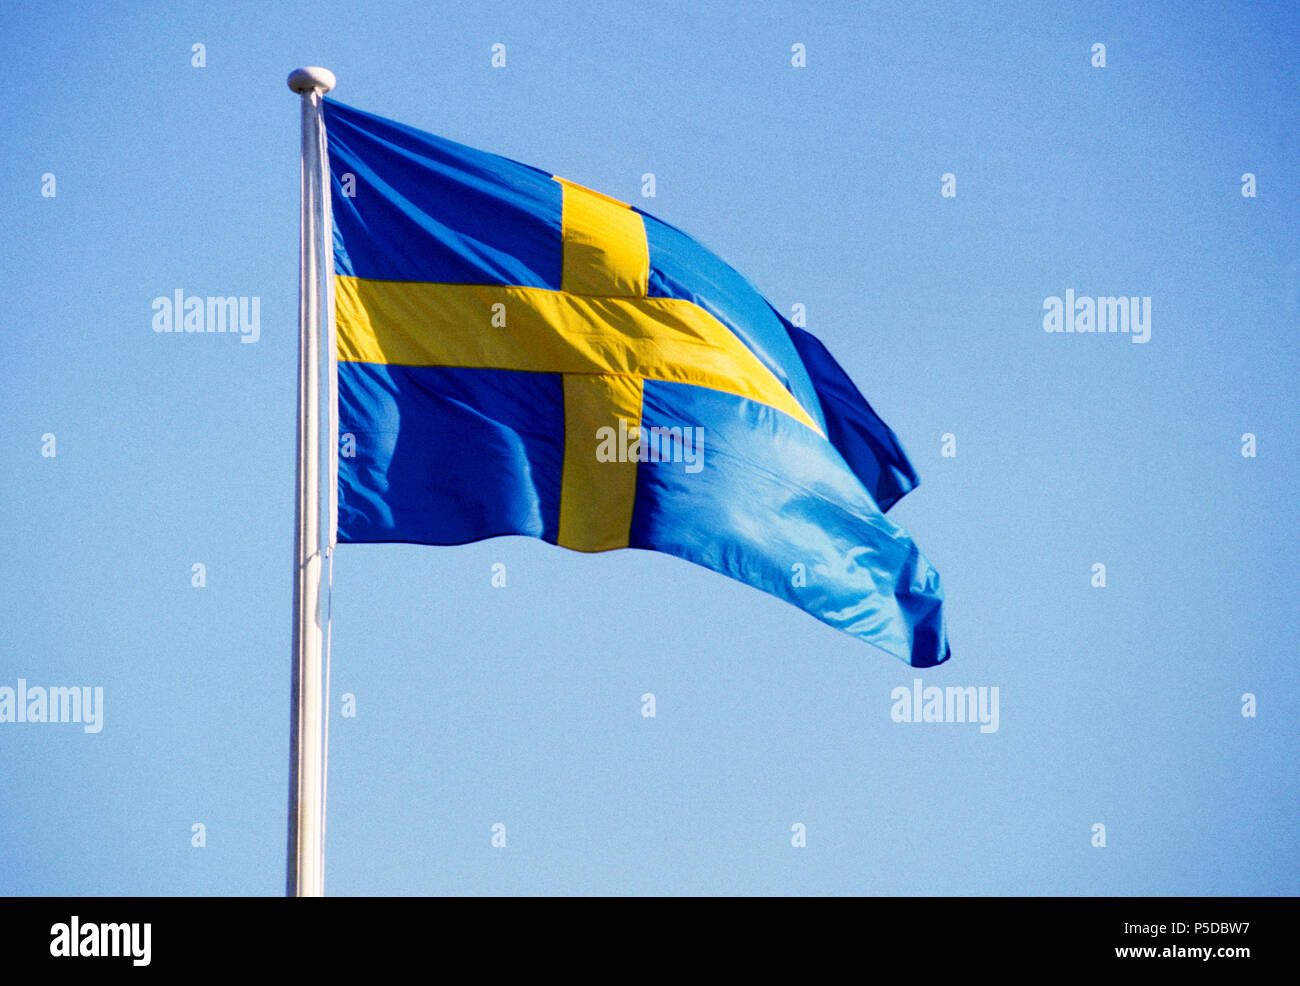 Drapeau suédois 2005 sur le drapeau pole against sky Banque D'Images